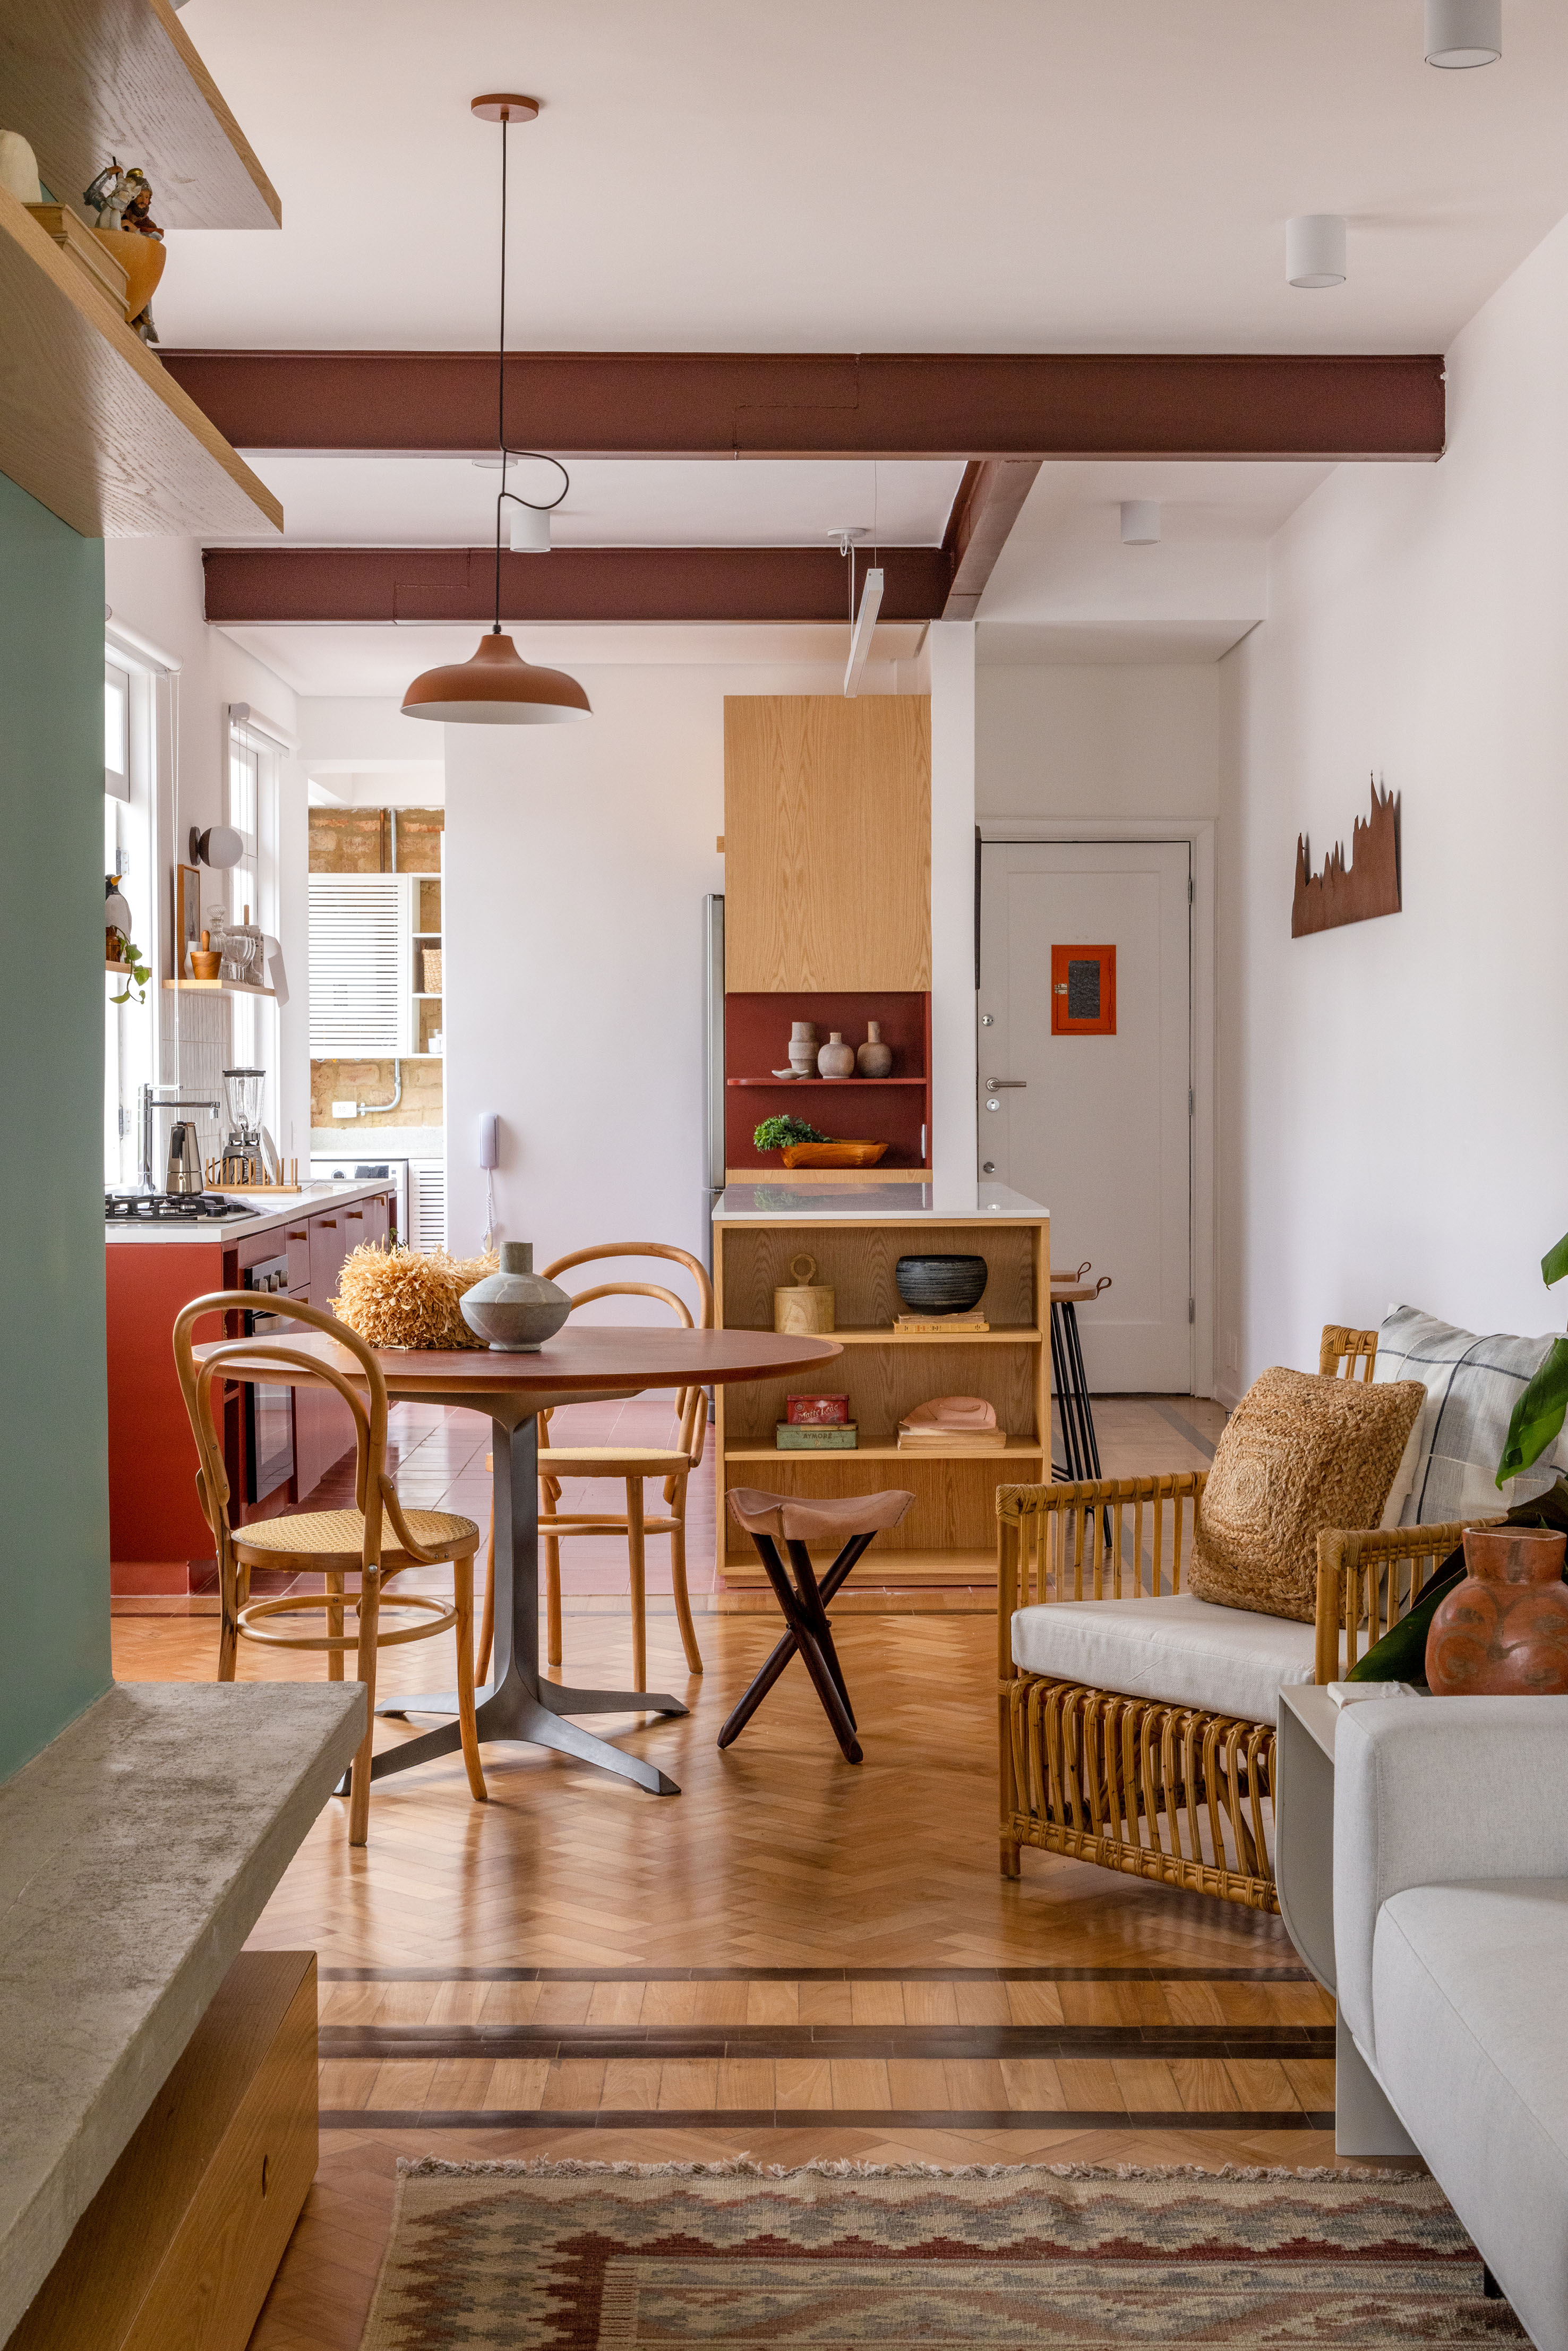 Ladrilhos hidráulicos trazem charme vintage e cor à apê de 90 m². Projeto de Ana Neri. Na foto, sala de jantar integrada, mesa redonda, cadeiras de madeira.